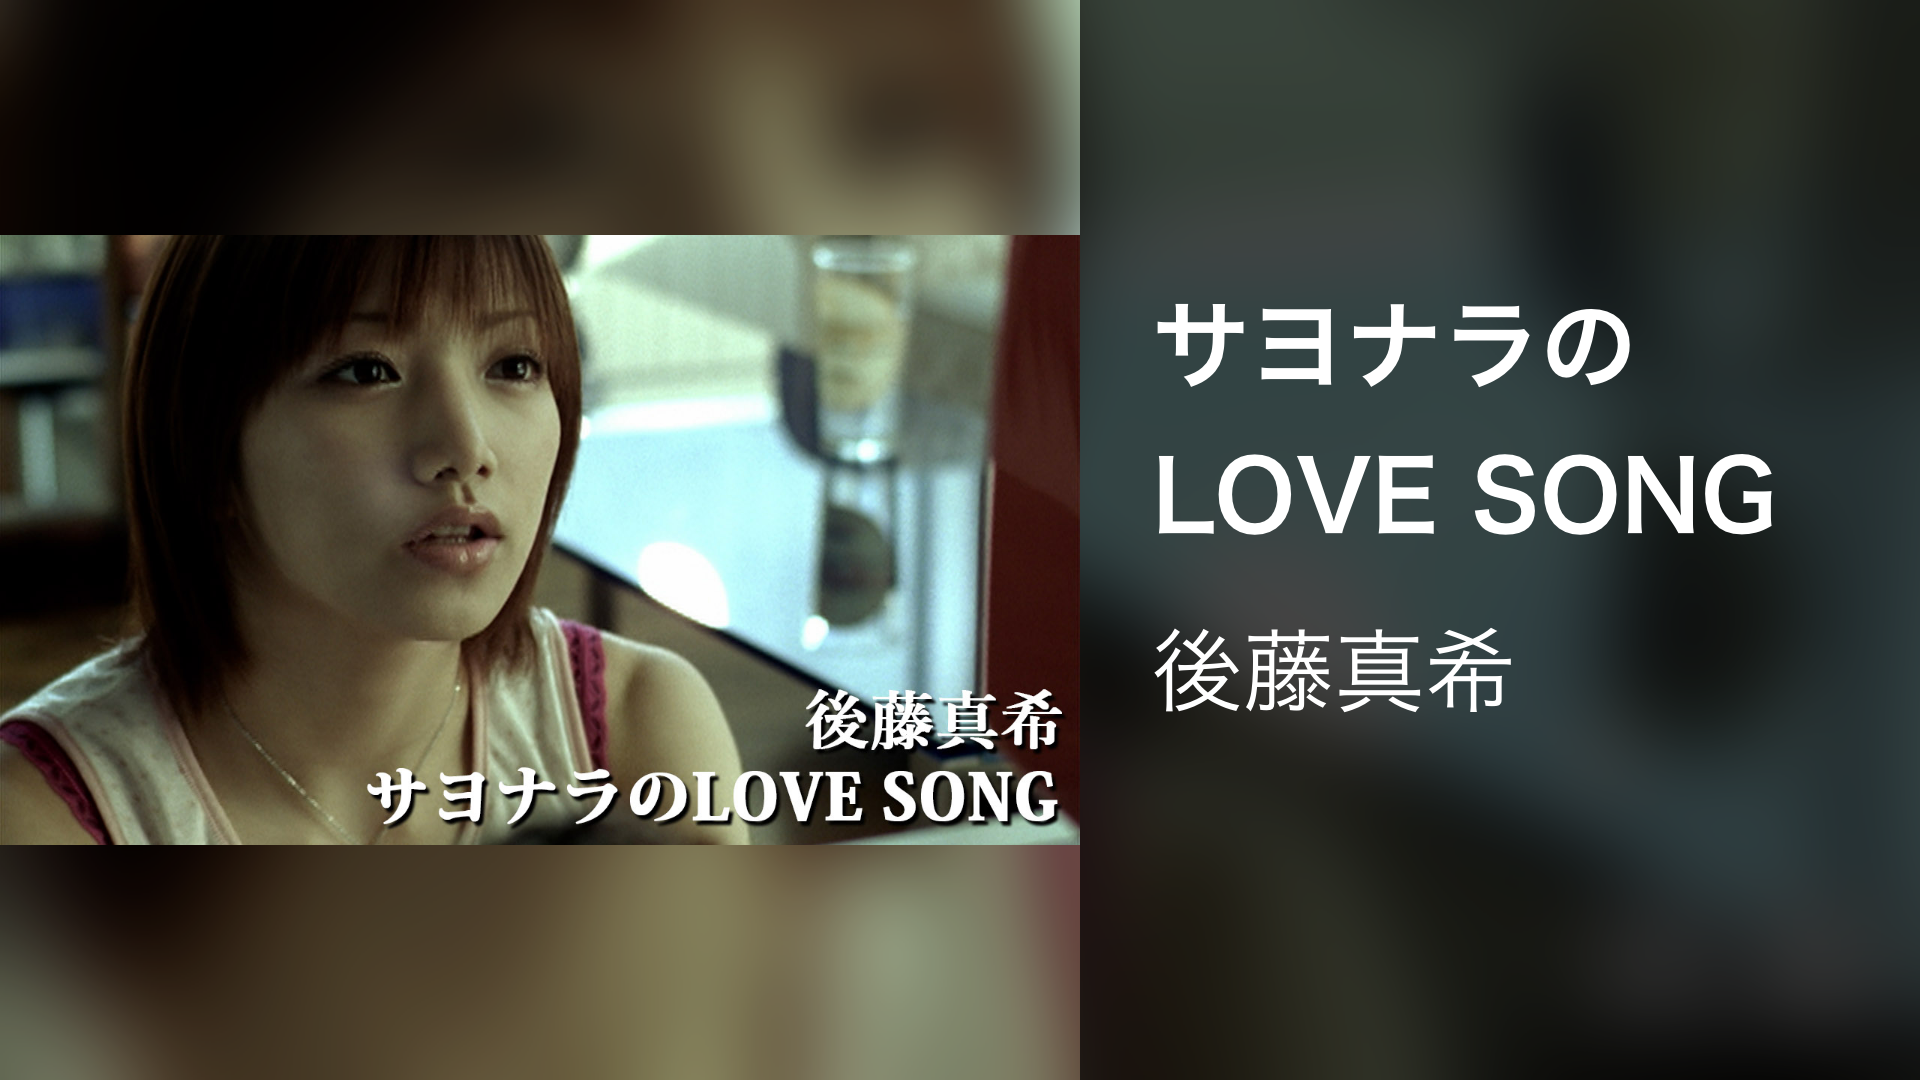 サヨナラのLOVE SONG(音楽・アイドル / 2004) - 動画配信 | U-NEXT 31日間無料トライアル